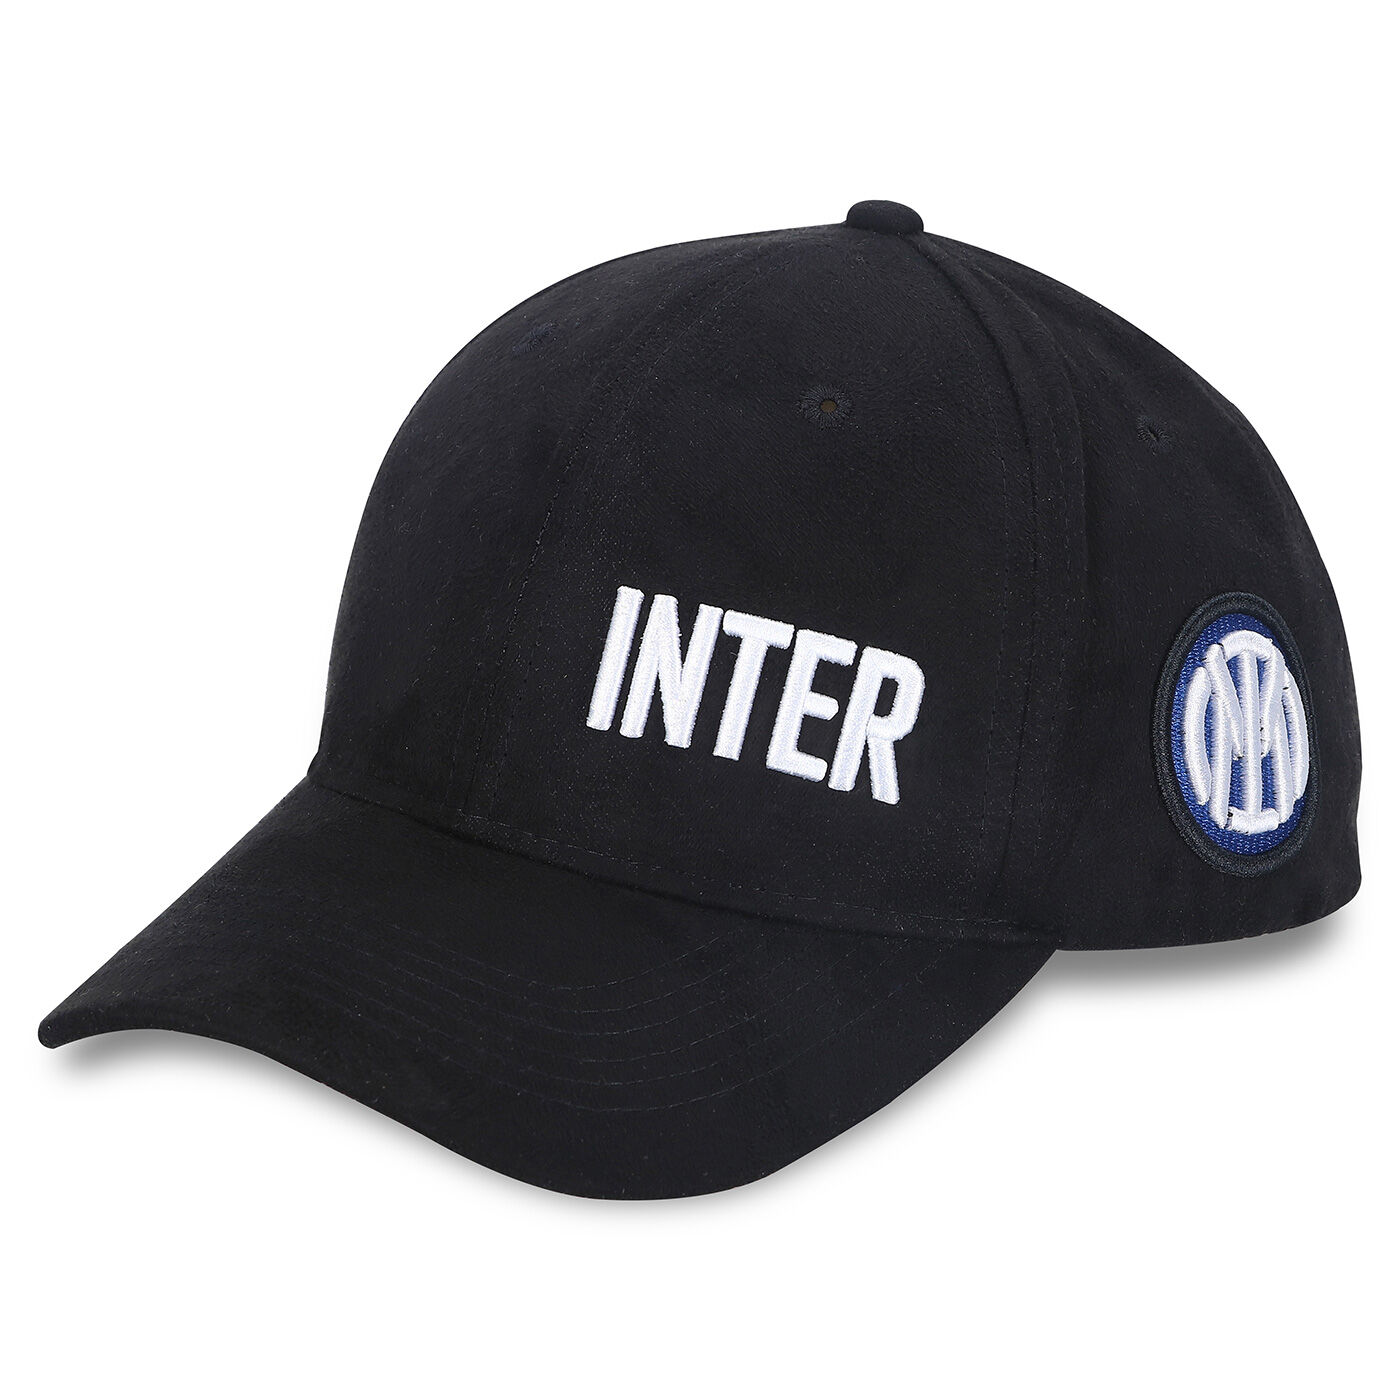 Cappello Inter 54 cm Ufficiale nerazzurri visiera berretto baseball originale 